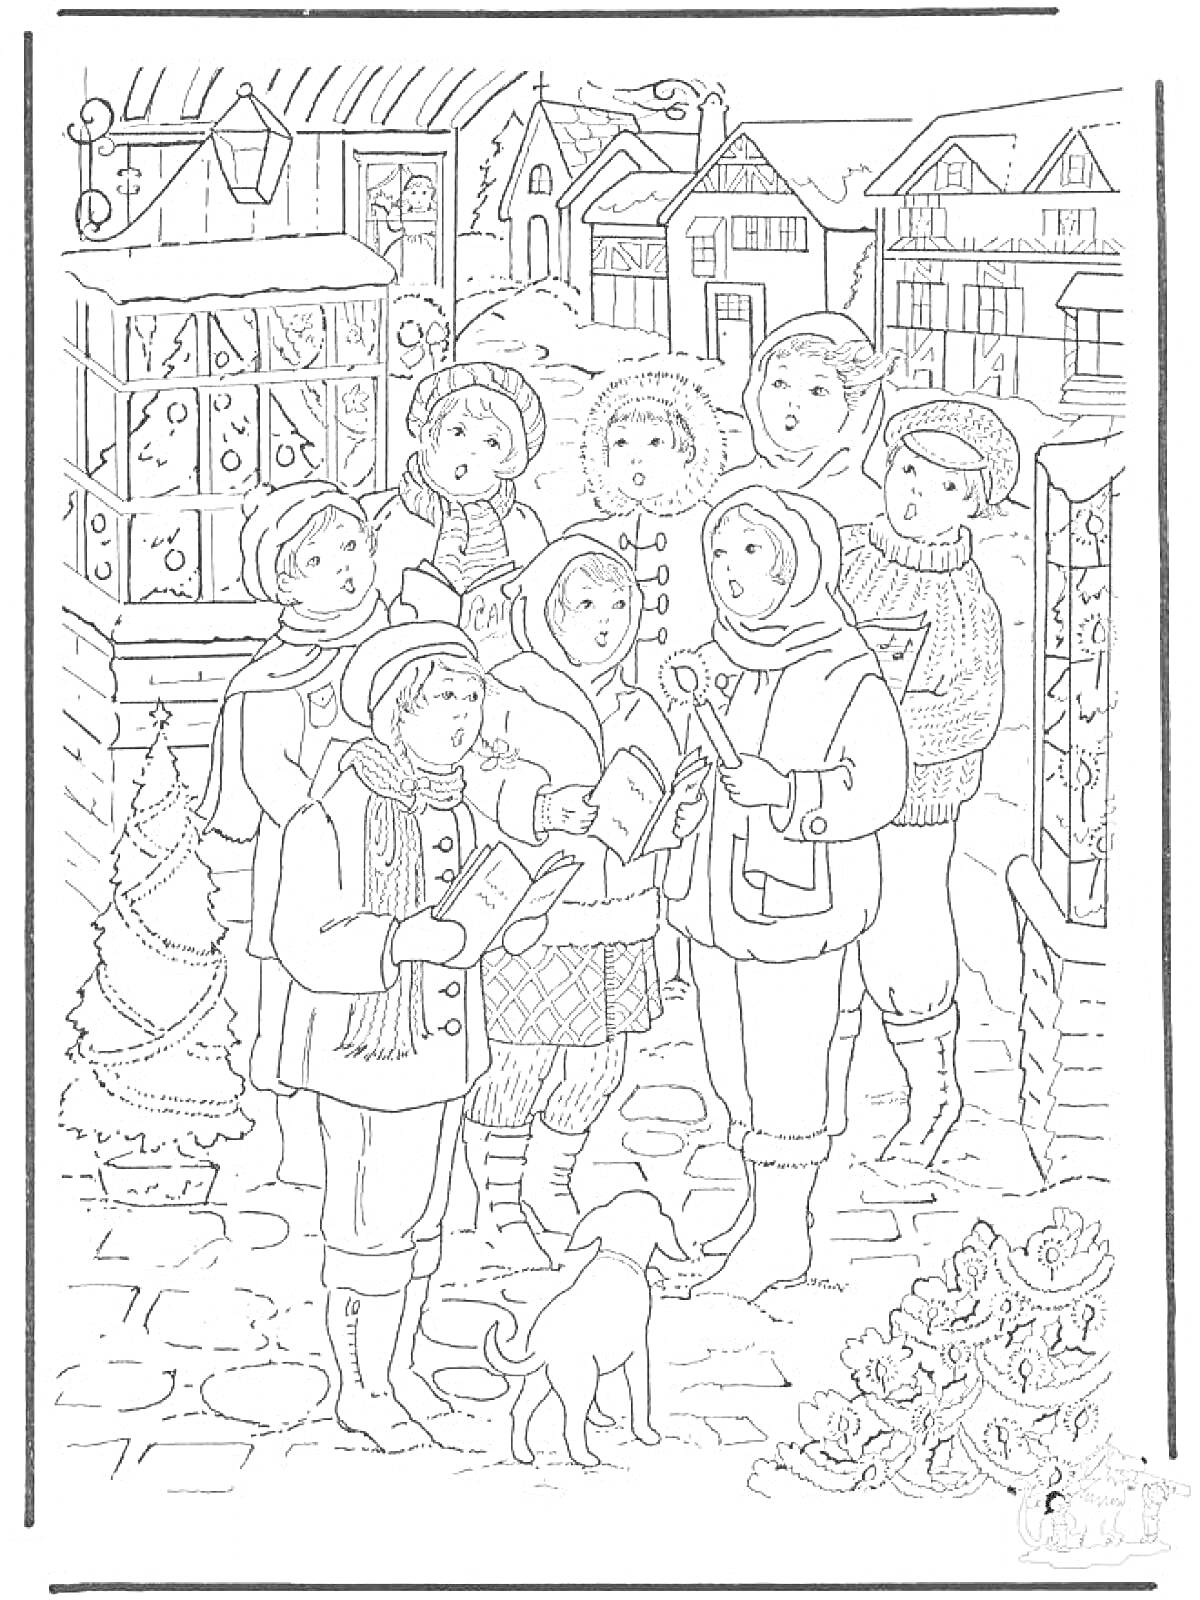 Раскраска Дети колядуют на улице в рождественский вечер с книгами и музыкальными инструментами, на фоне украшенных домов, ёлки и собаки, стоящей рядом.